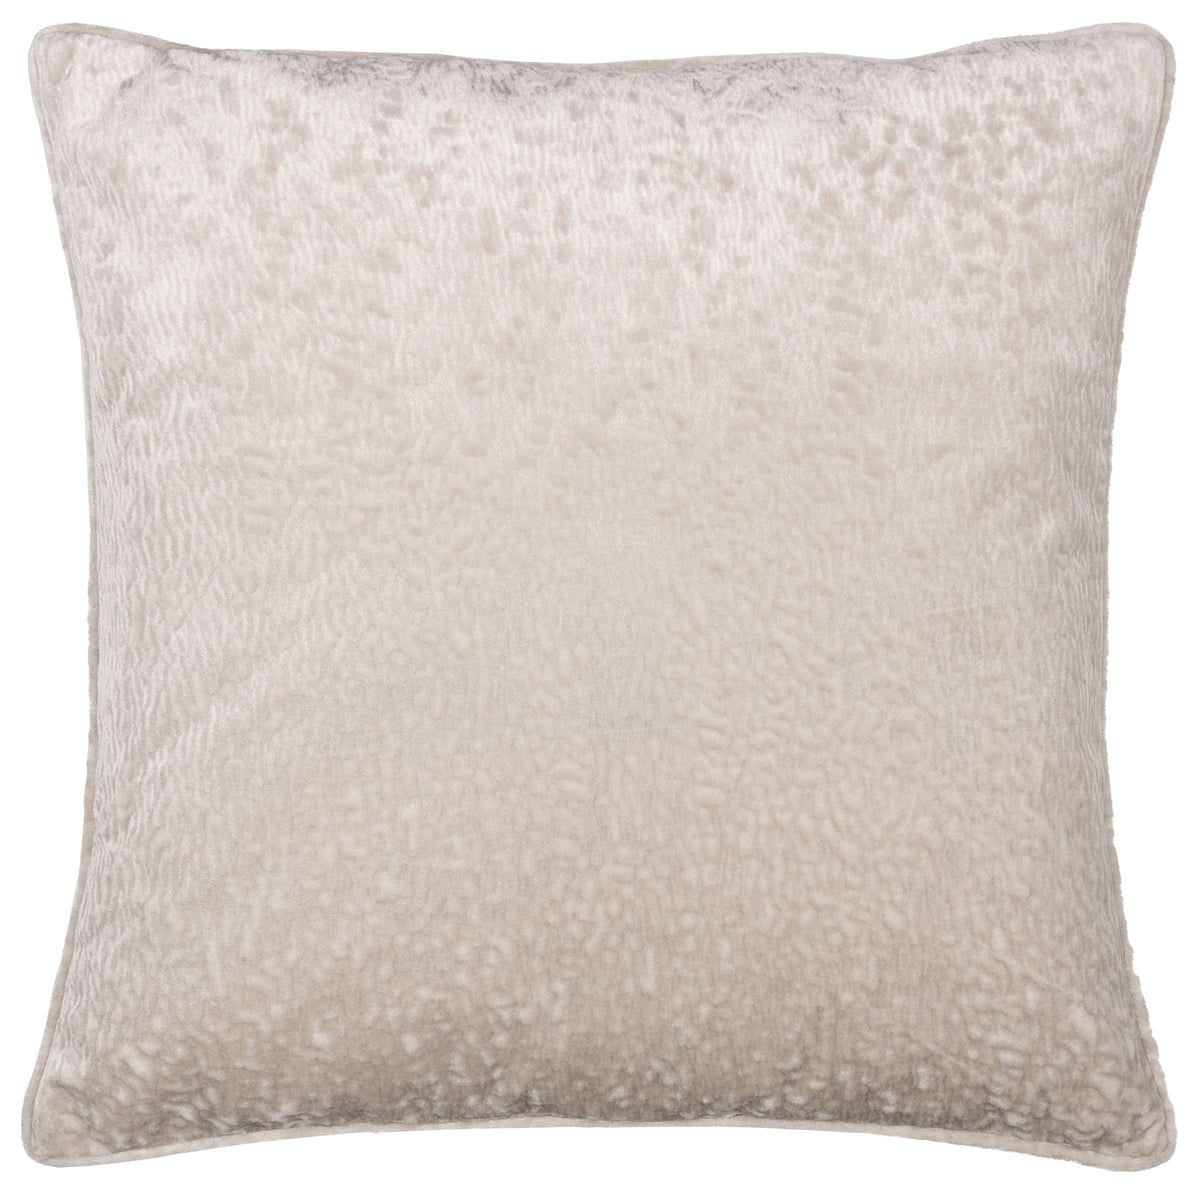 Ripple Large 50cm Polyester Velvet Cushion